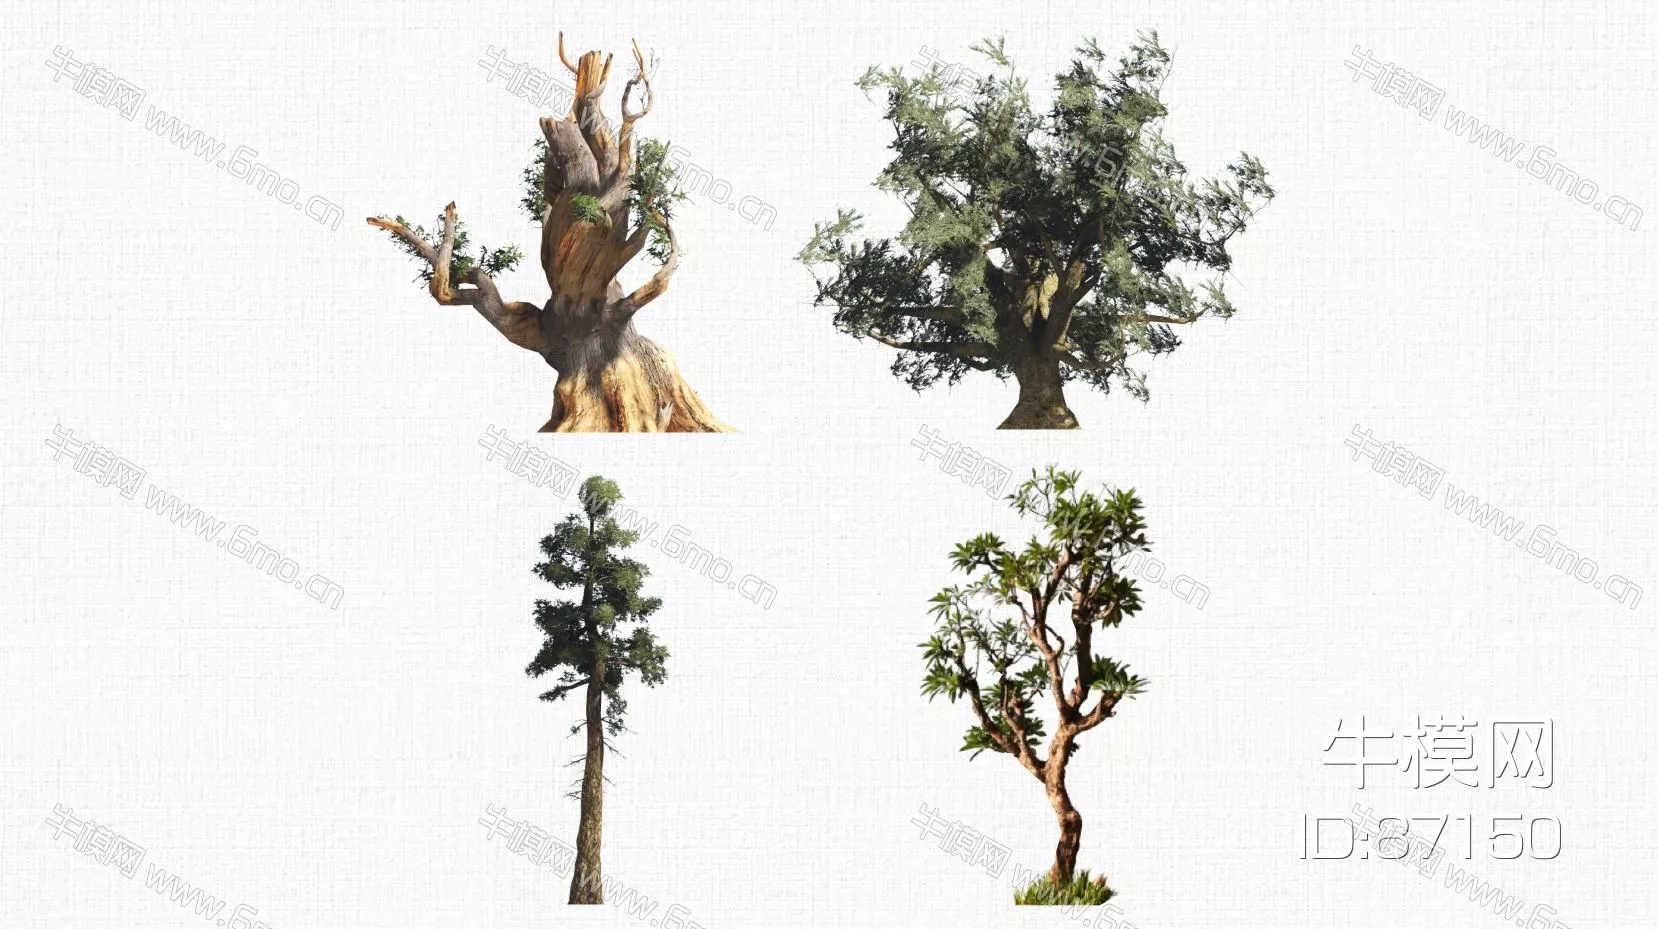 MODERN TREE - SKETCHUP 3D MODEL - ENSCAPE - 87150